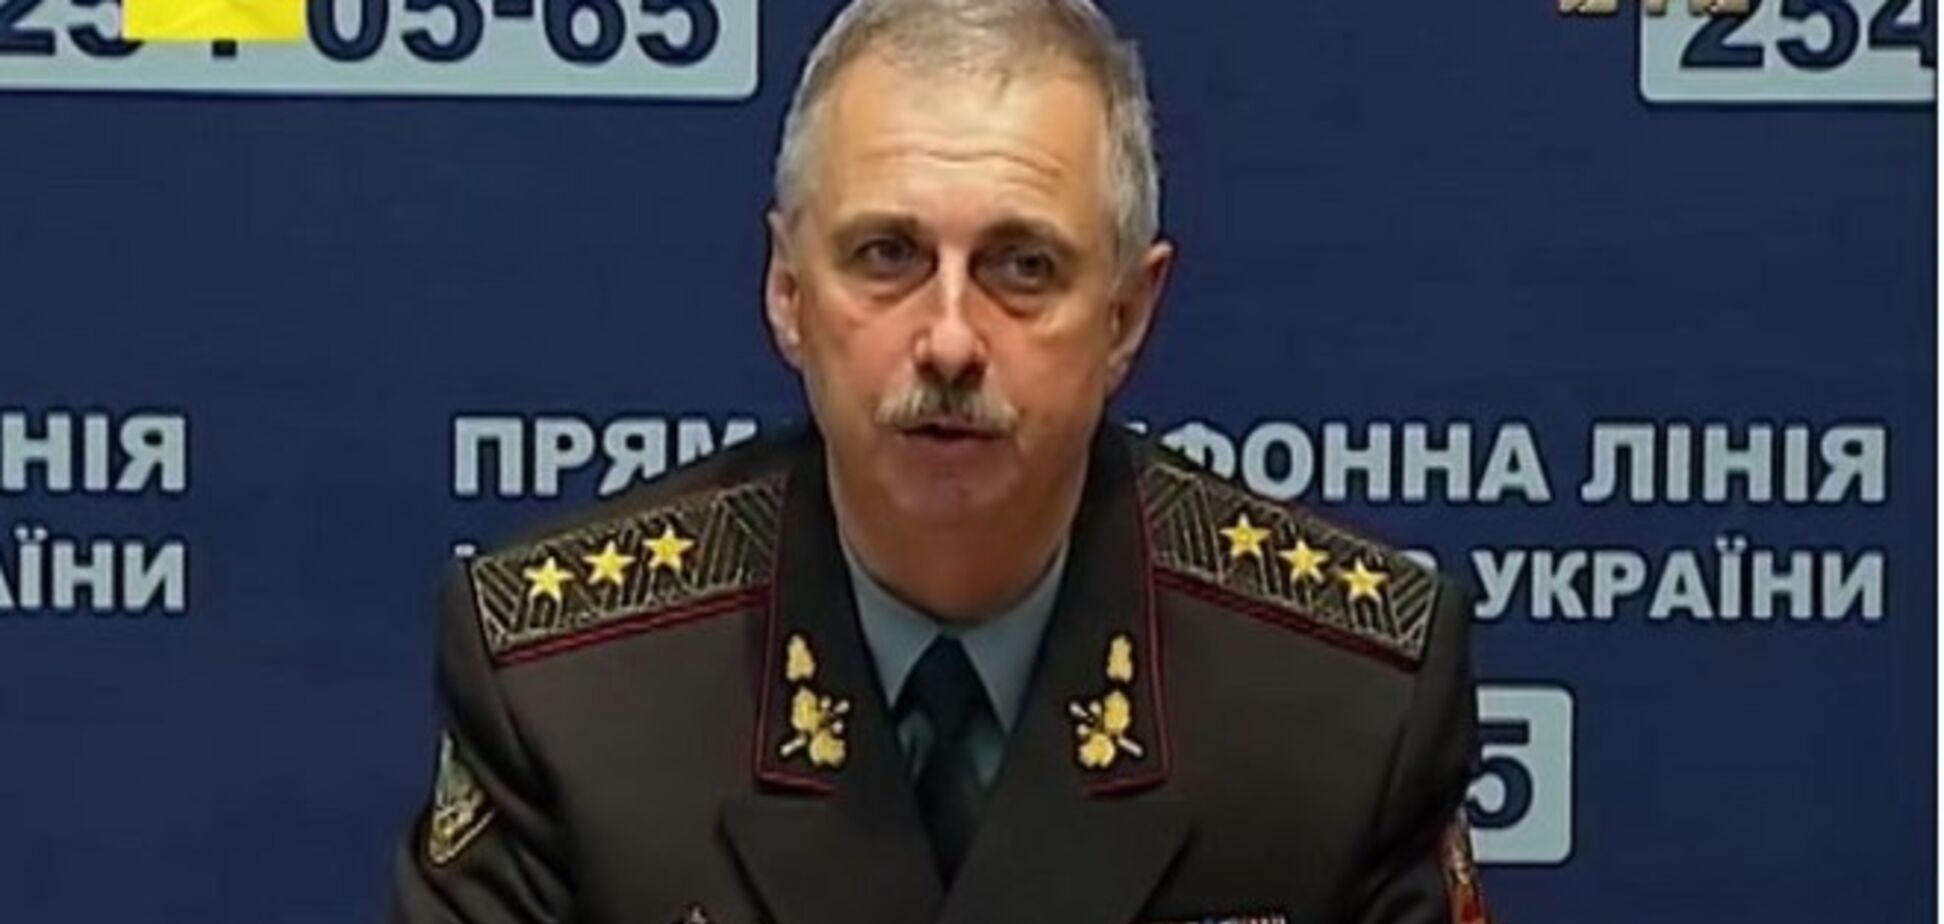 В украинской армии появится четвертый вид Вооруженных сил